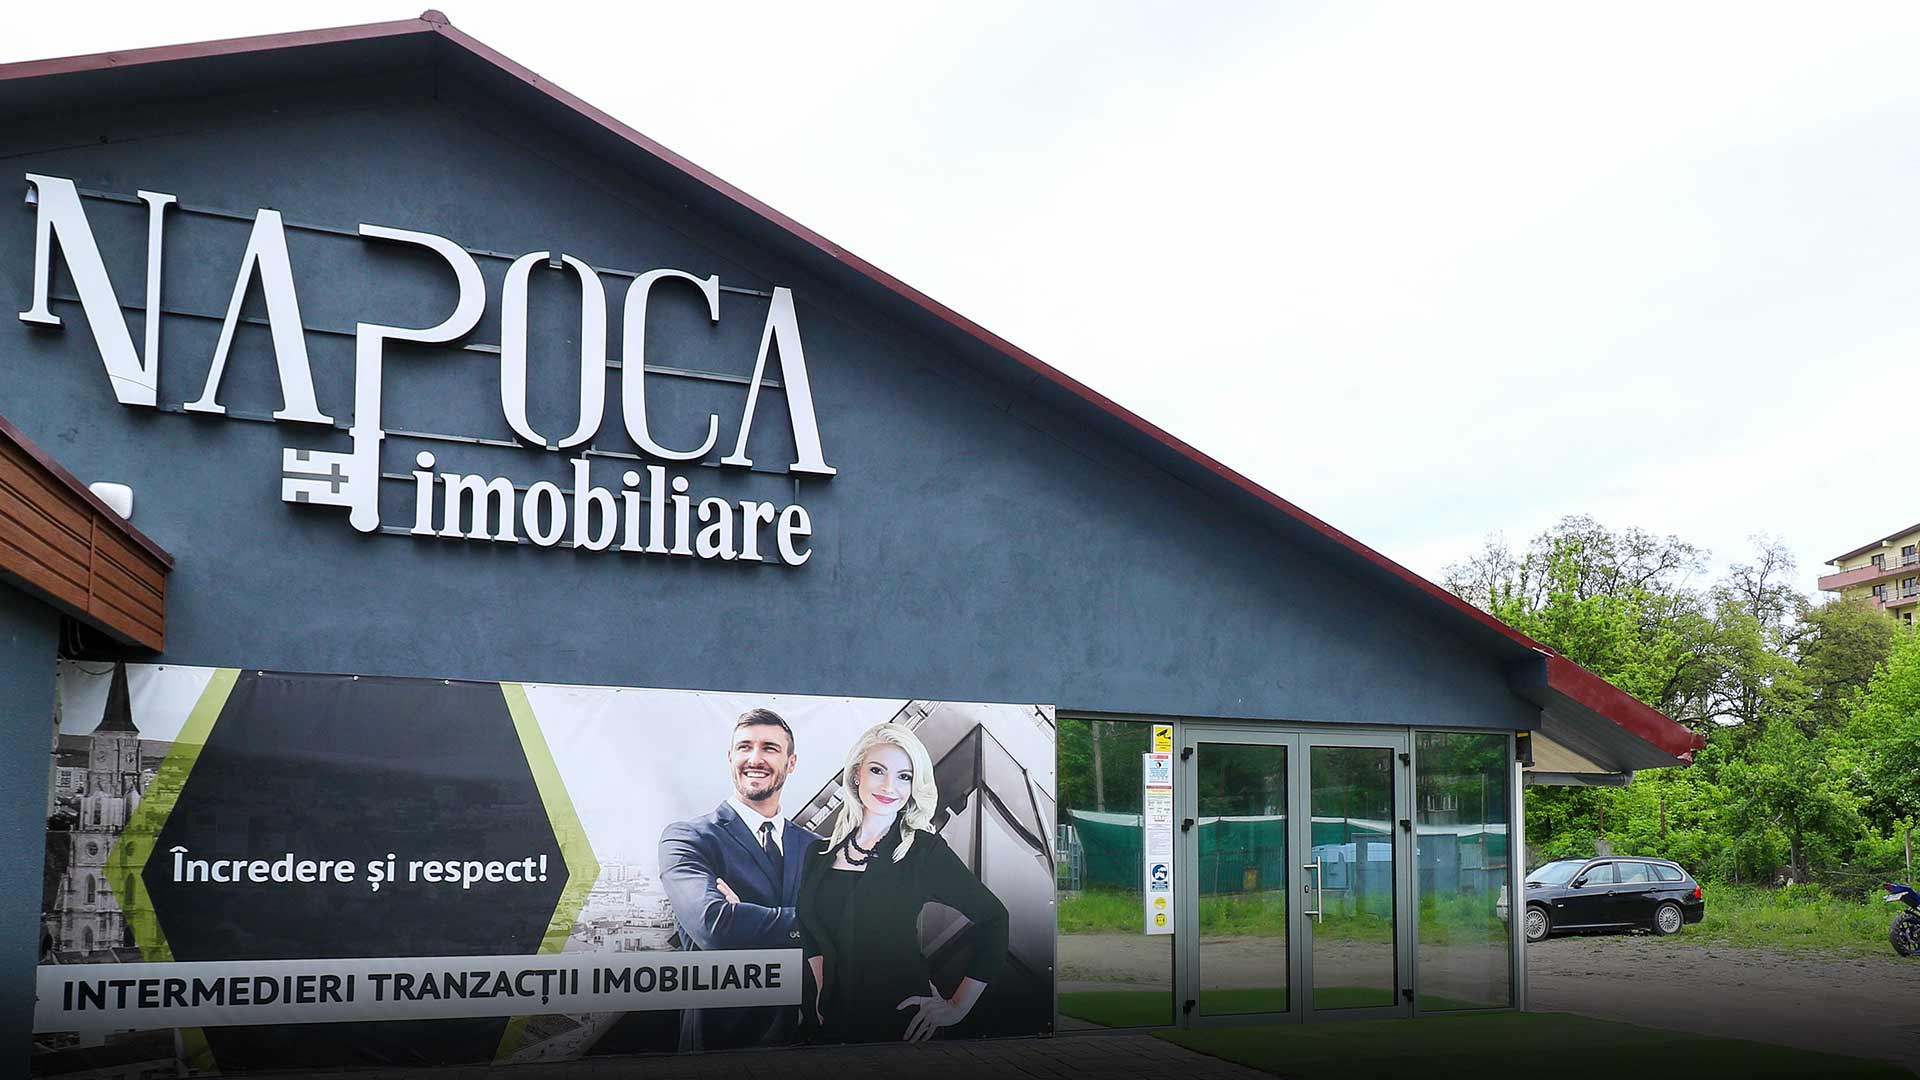 Agenția Napoca Imobiliare și-a mutat activitatea la noul sediu